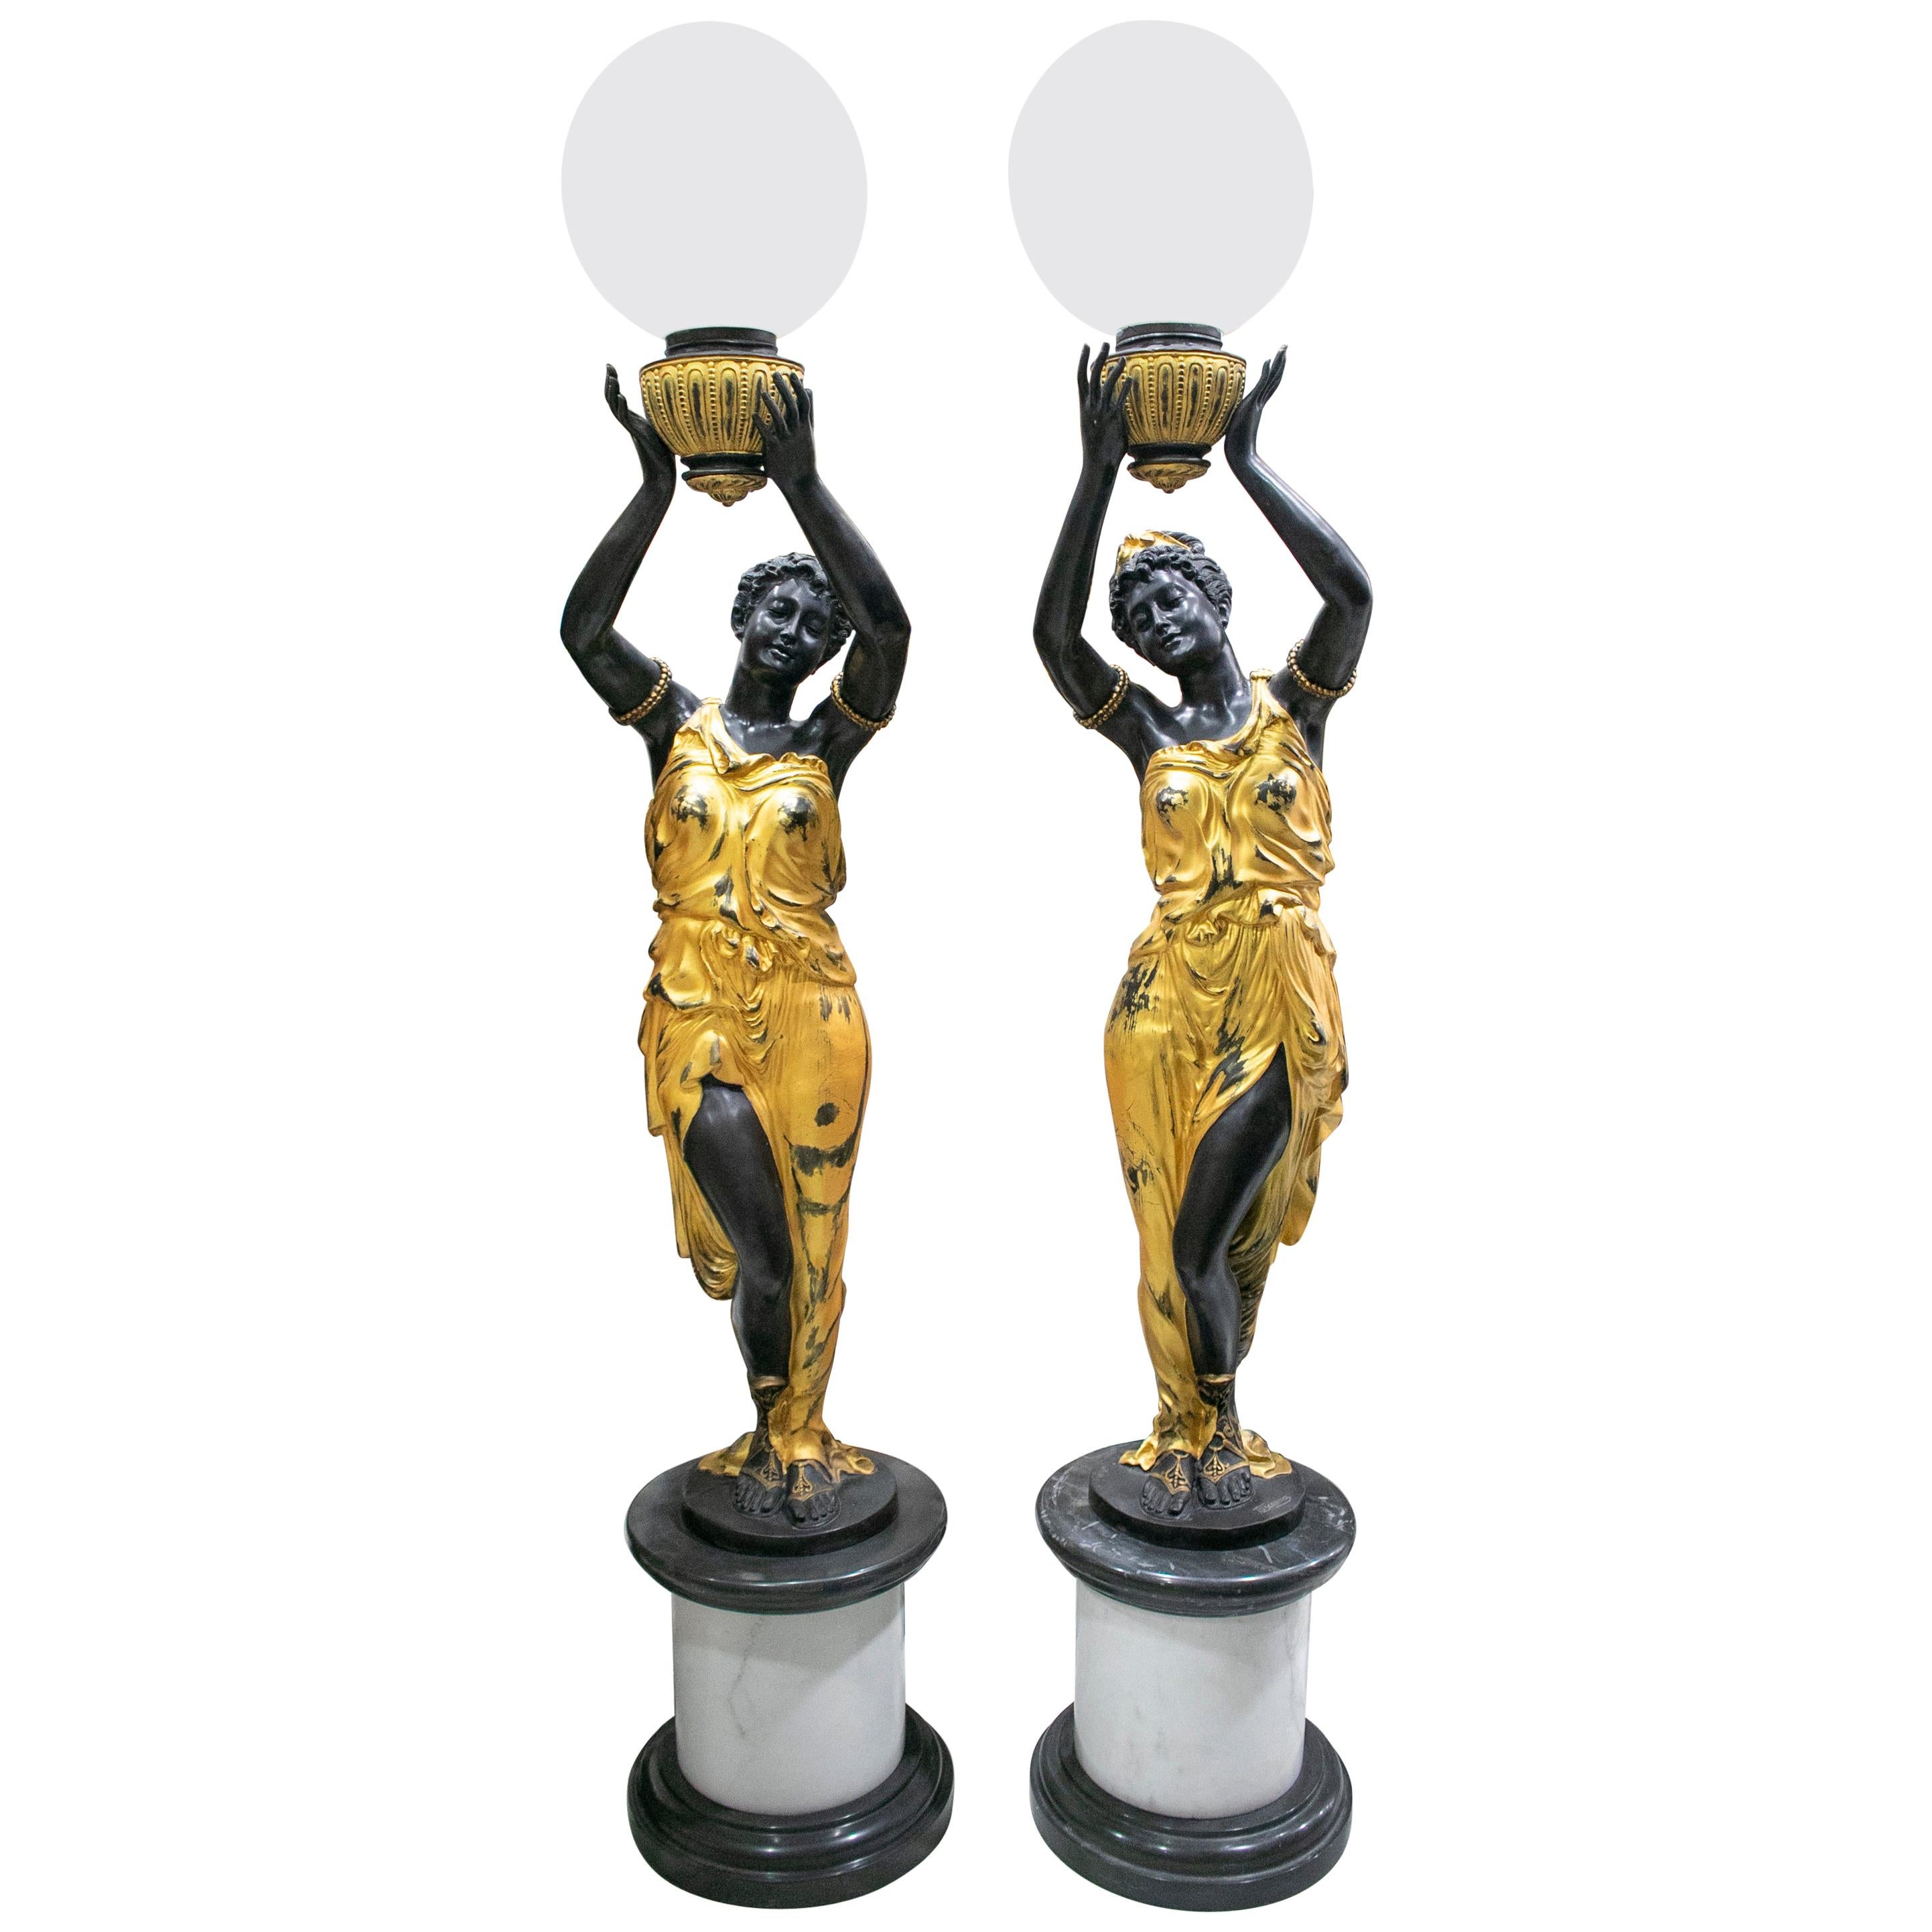 Paire de lampes torchères grandeur nature sur pied en bronze doré représentant une statue féminine, représentant une torchère